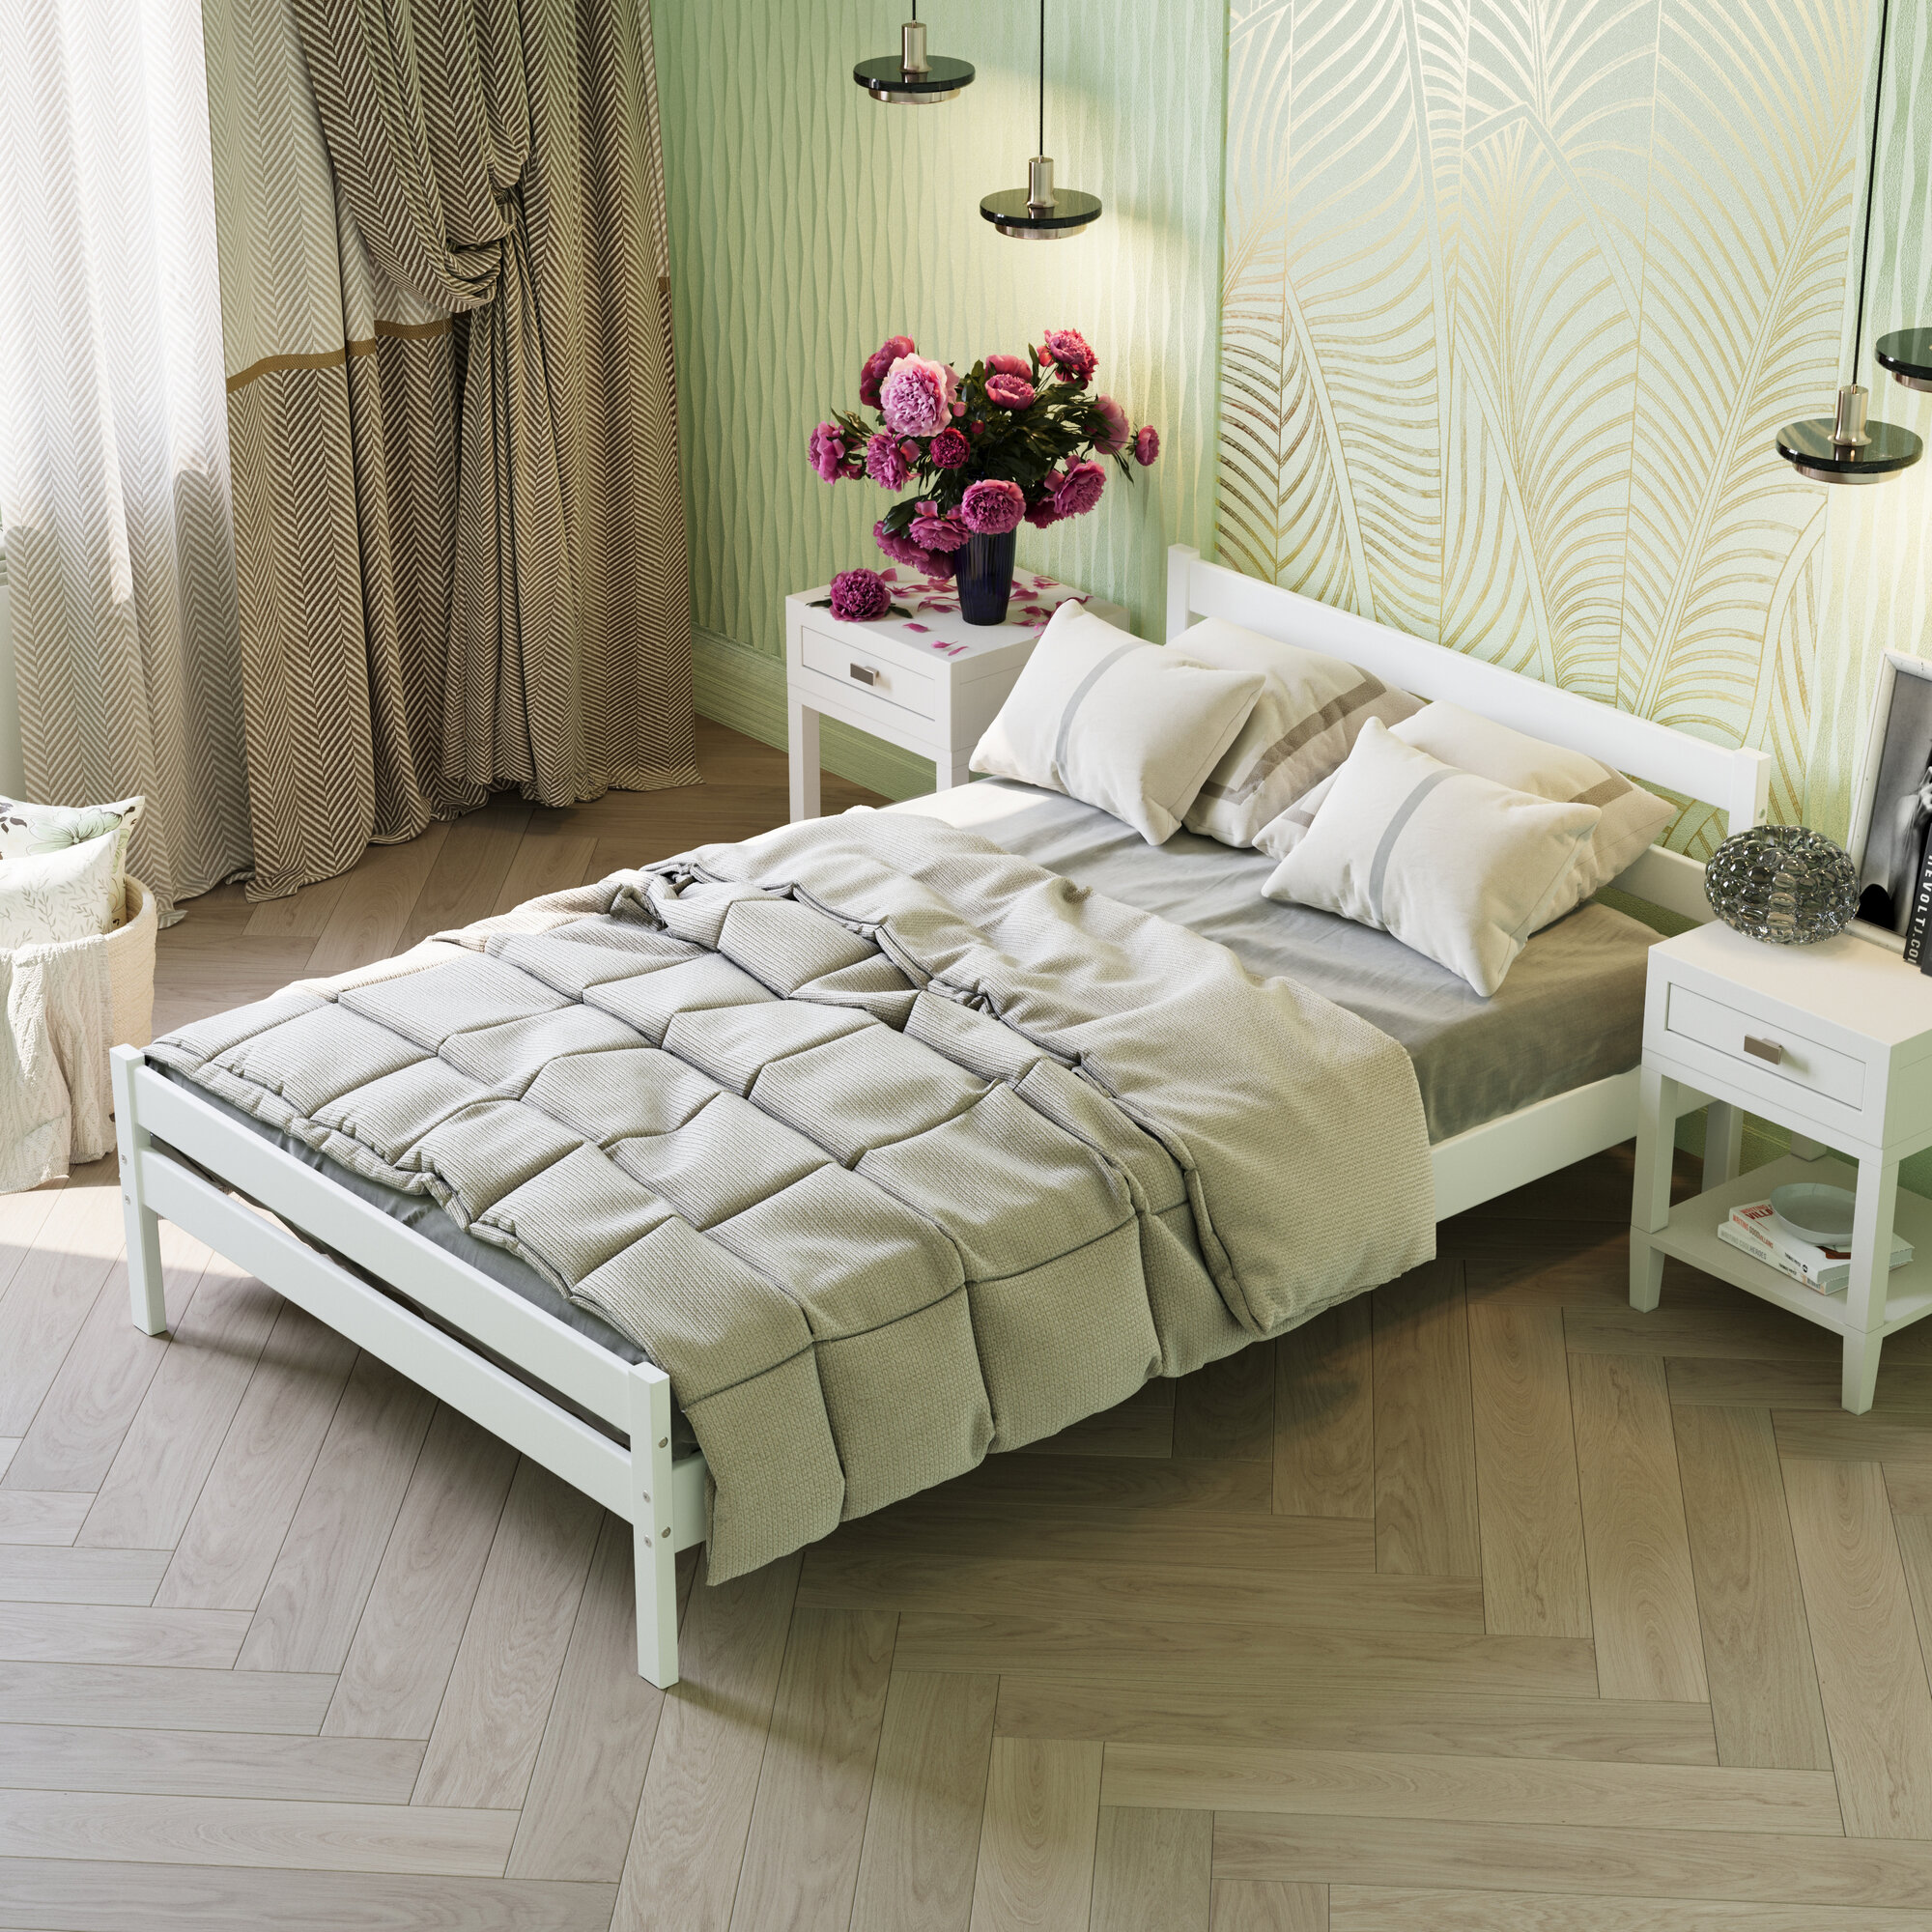 Кровать двуспальная деревянная из массива березы 120х200 см белая